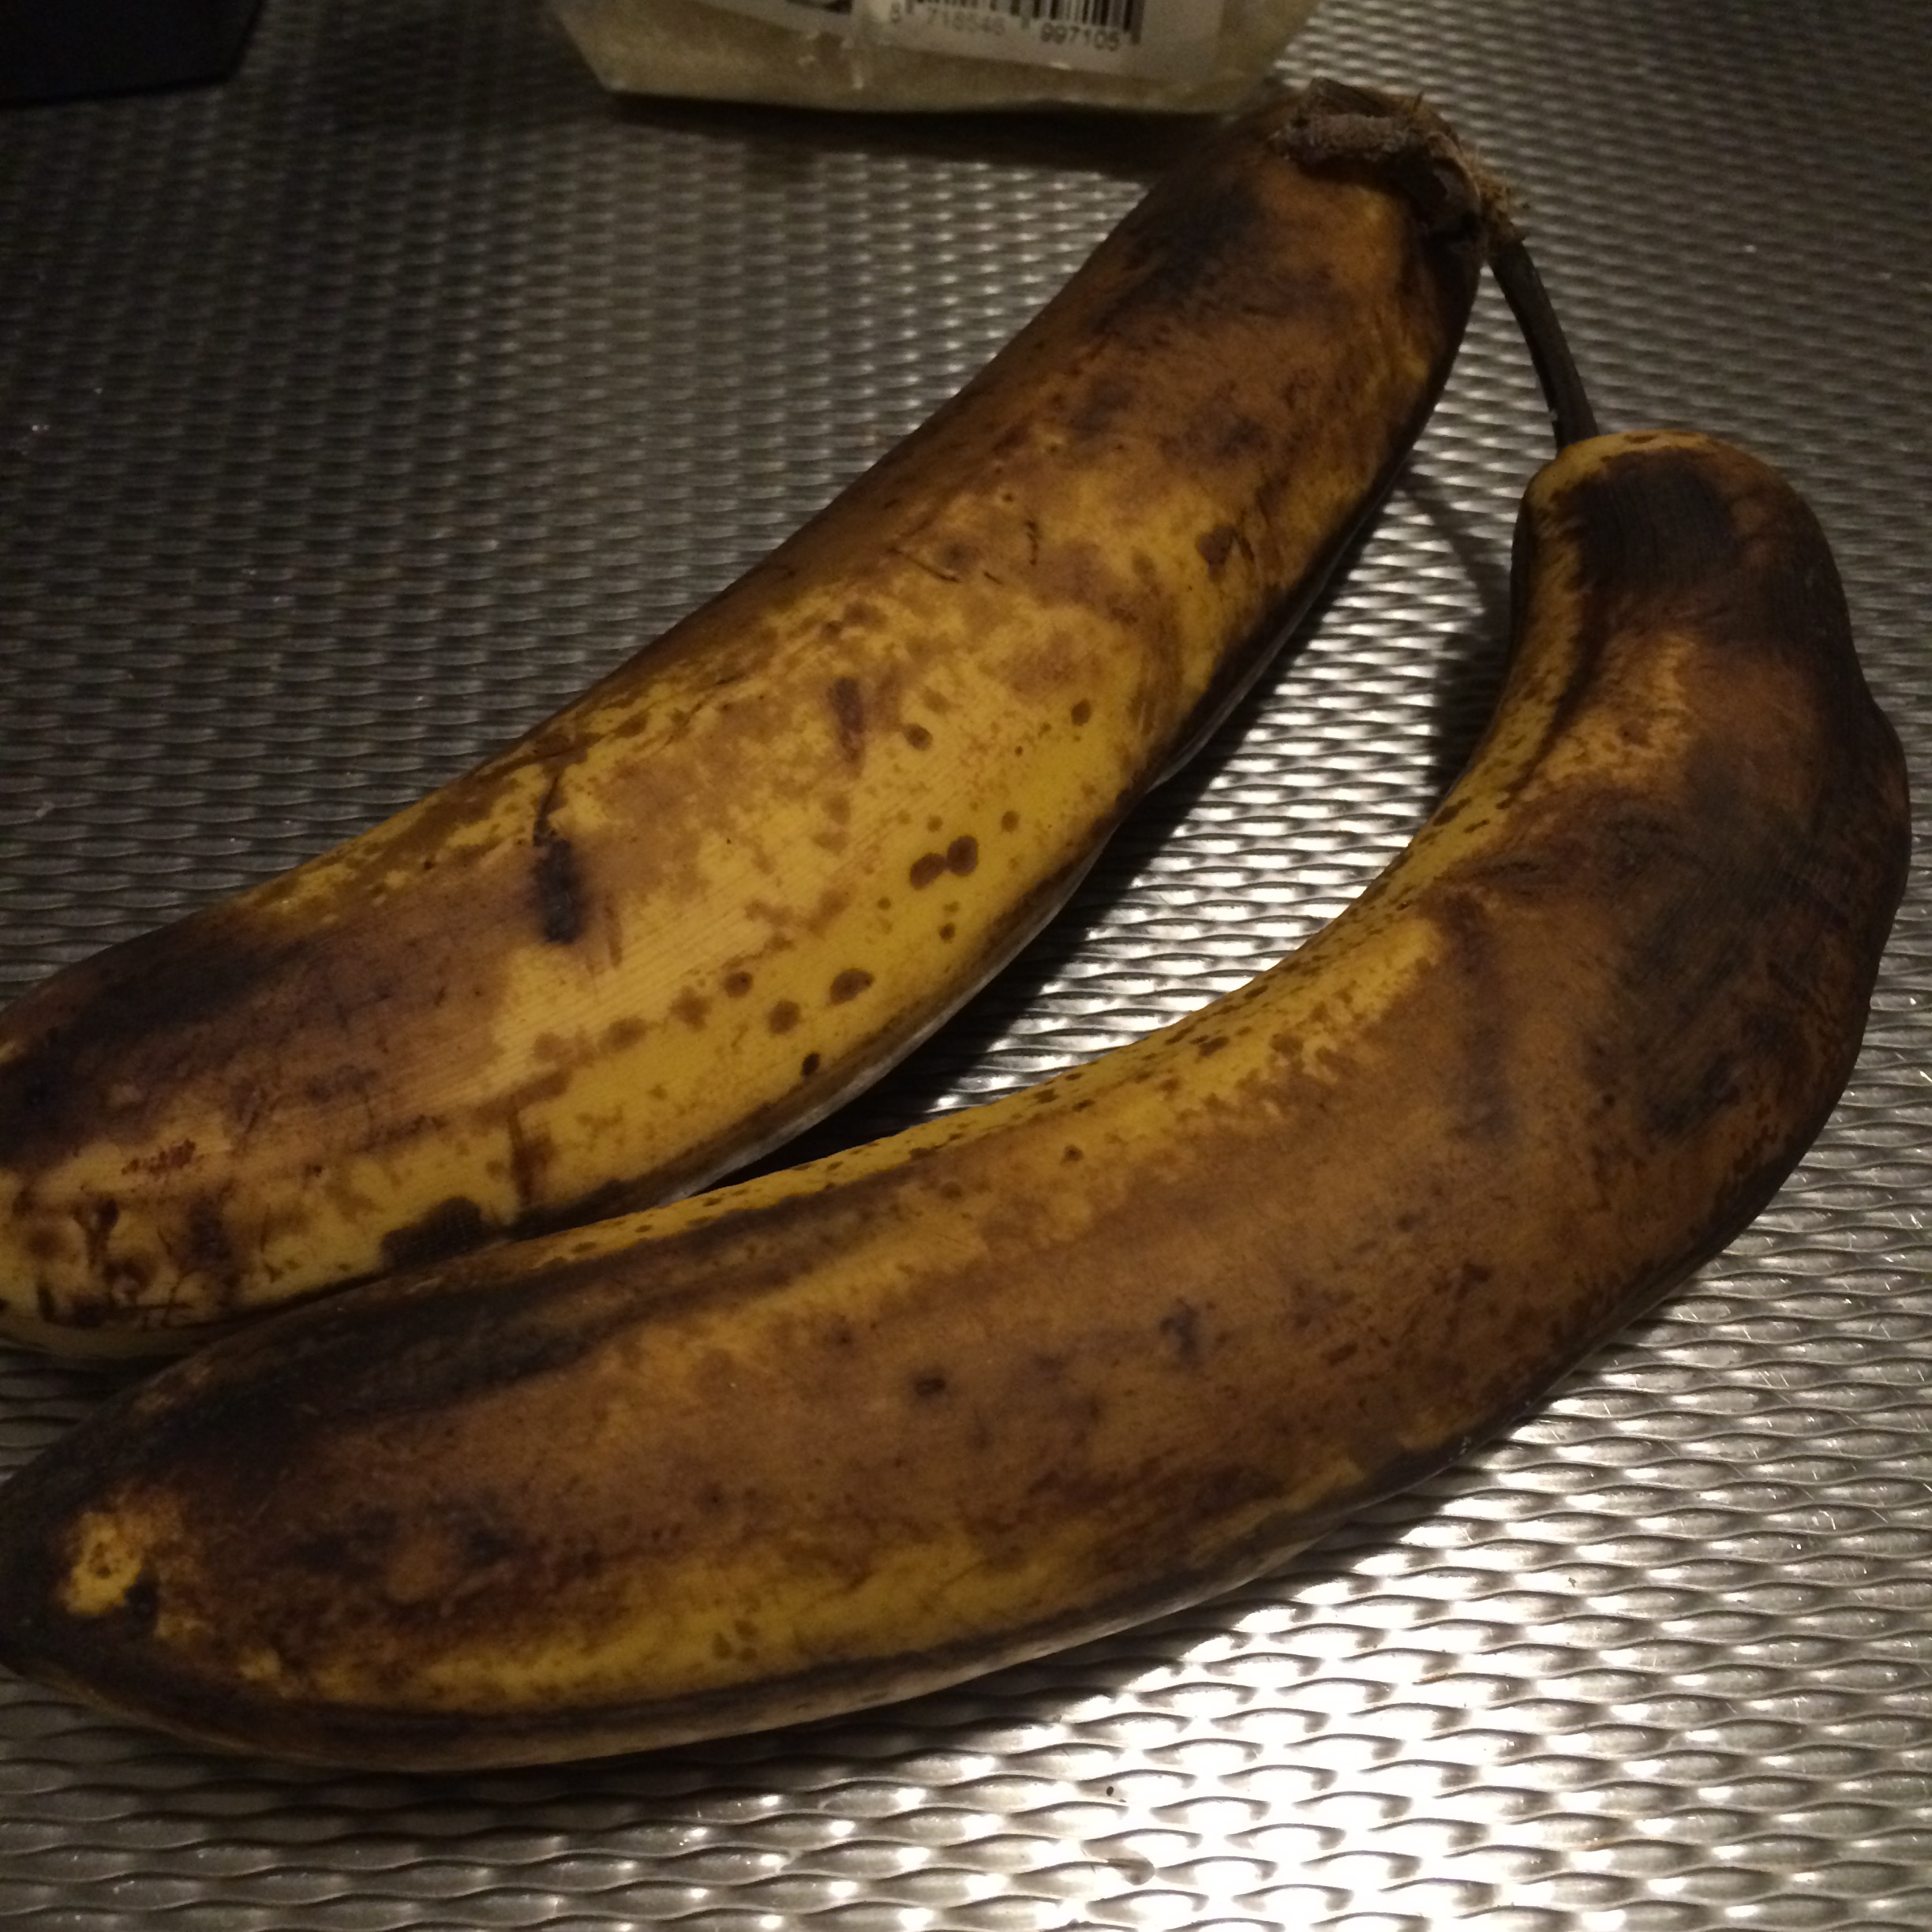 gezond bananenbrood rijpe bananen